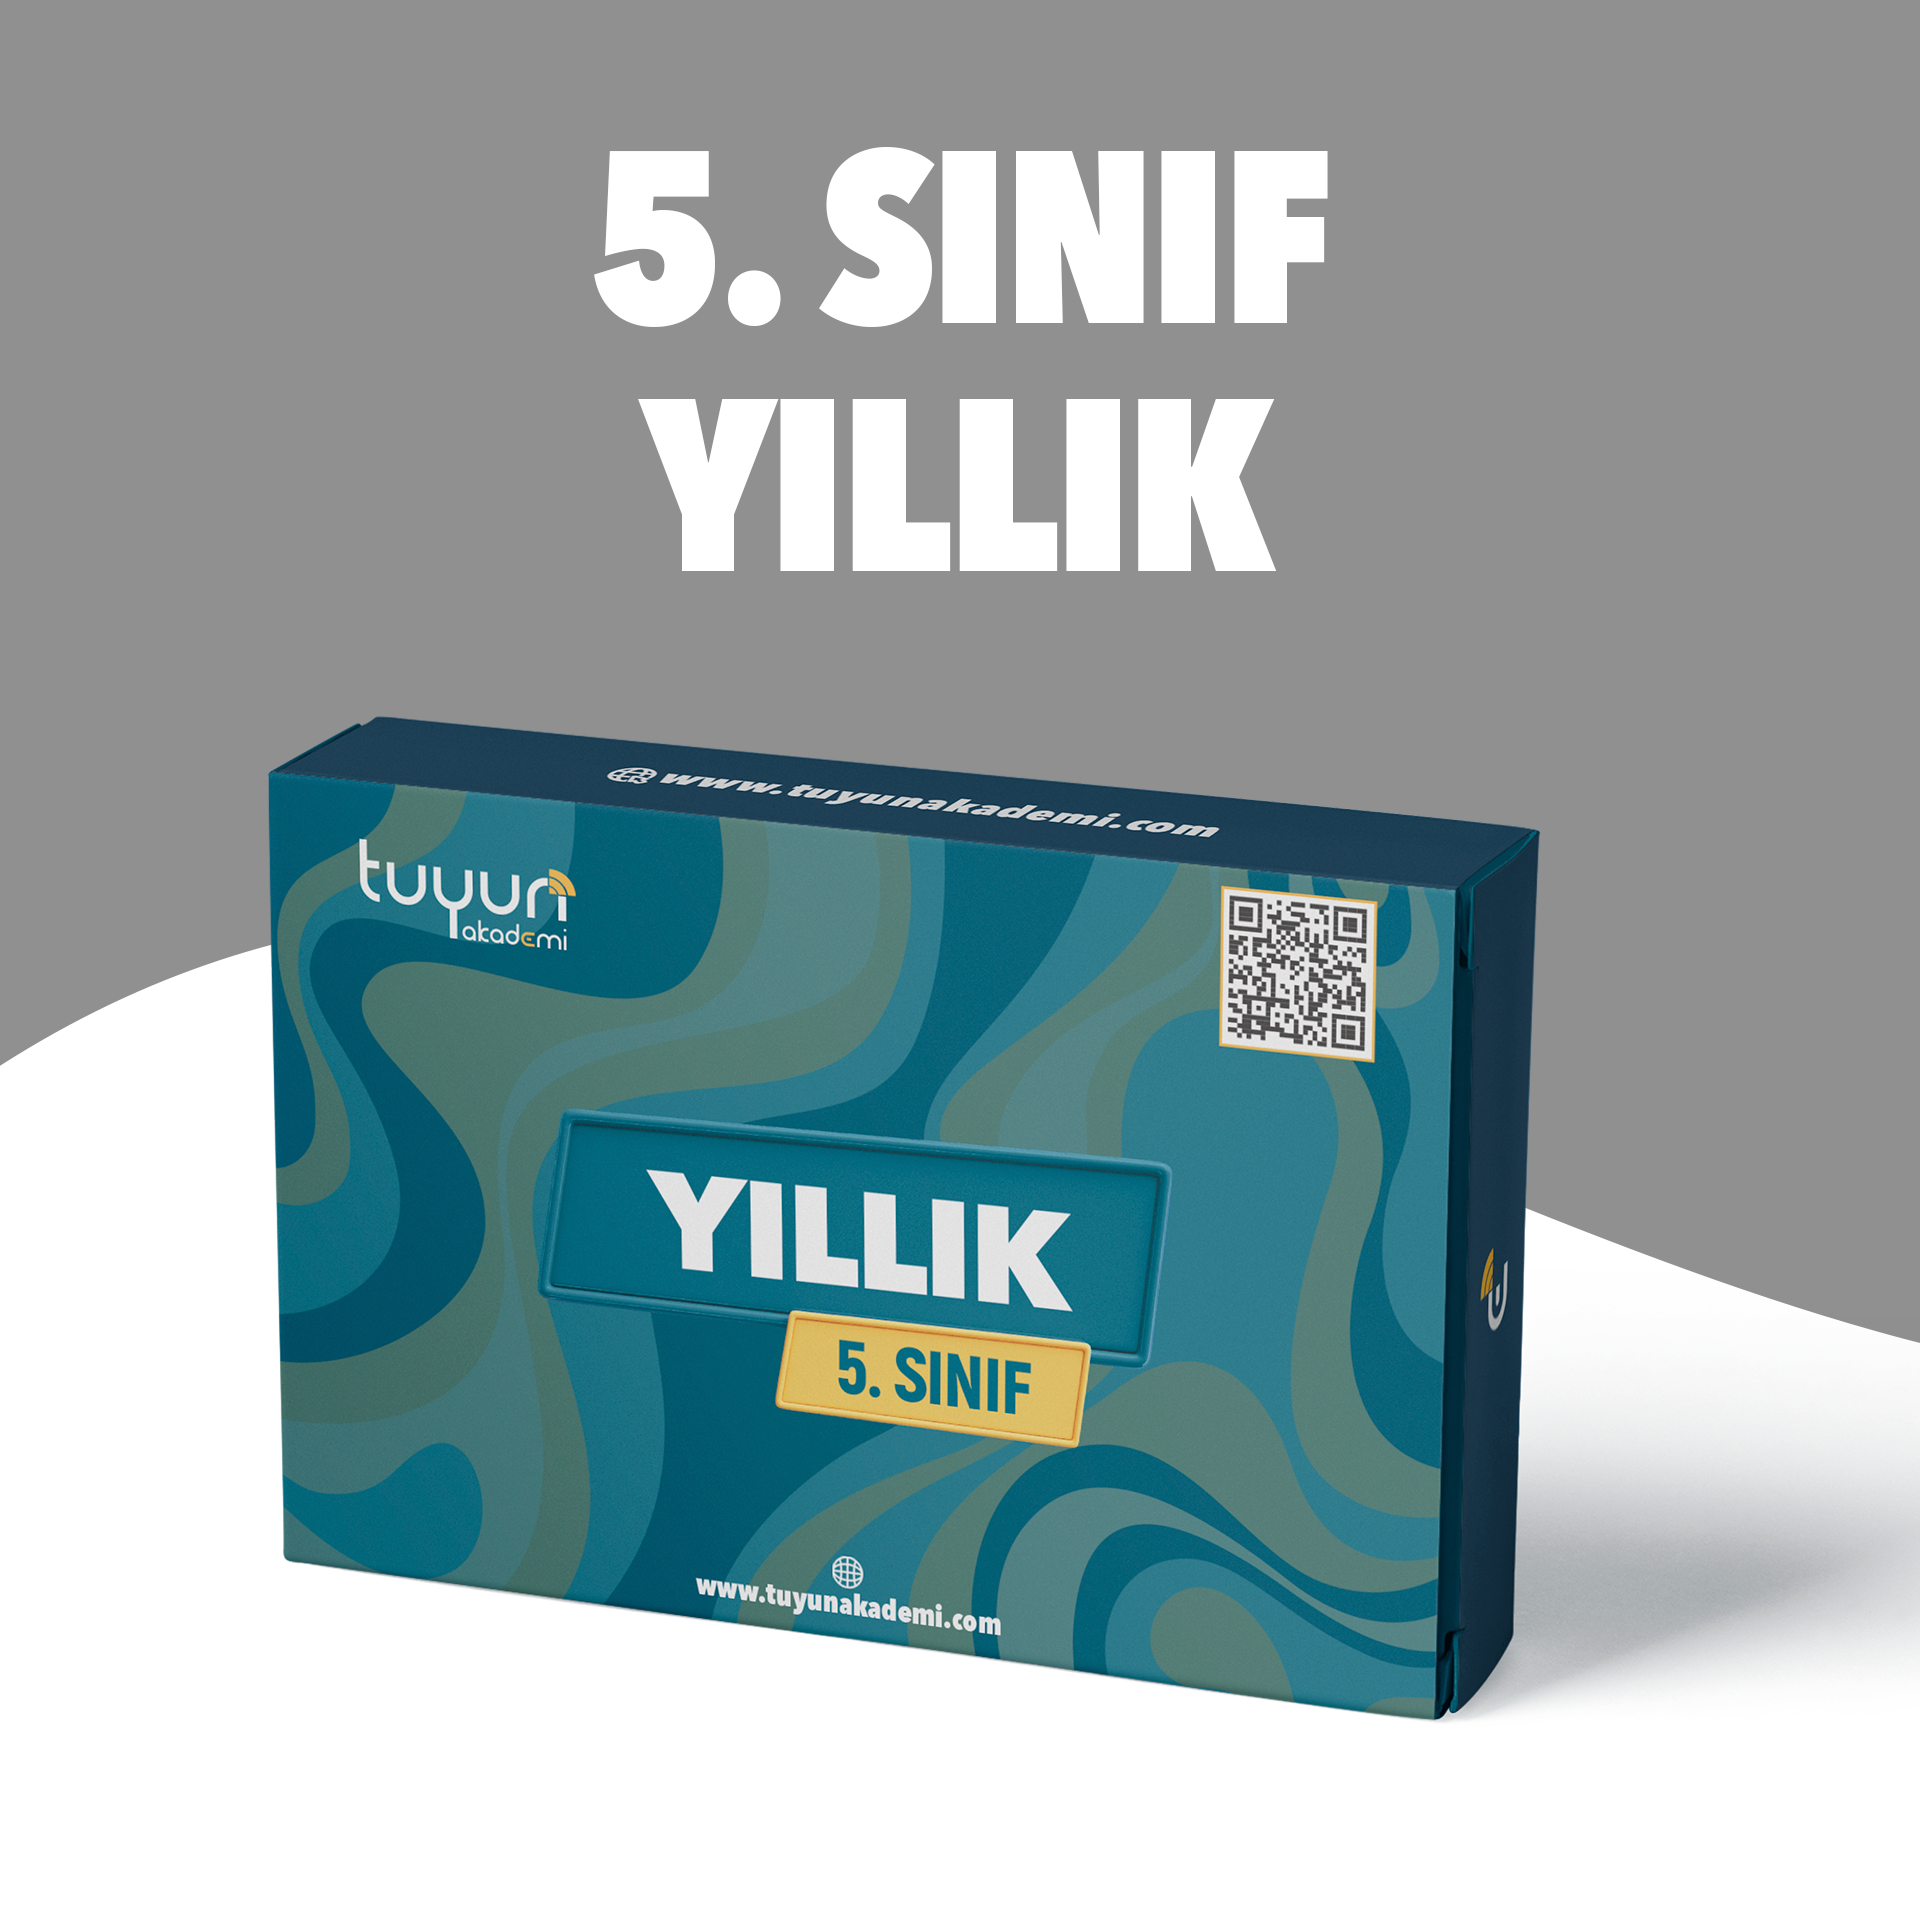 5.SINIF YILLIK PAKET